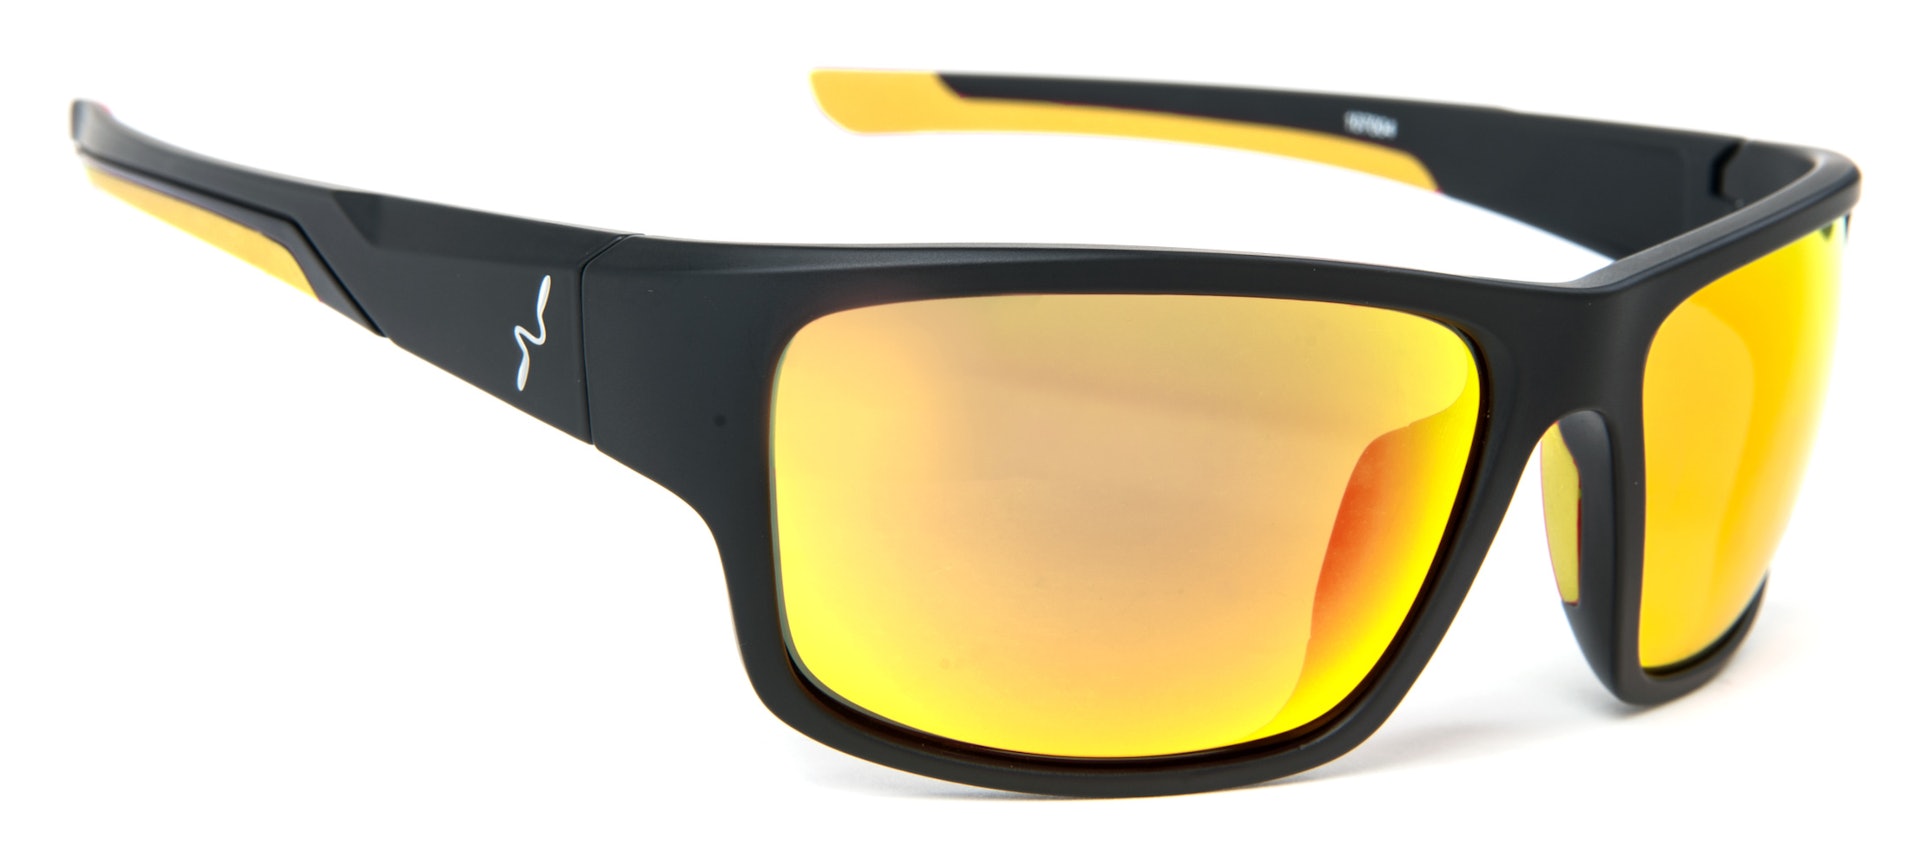 Experience Sunglasses - Yellow Lens (bild 1 av 1)